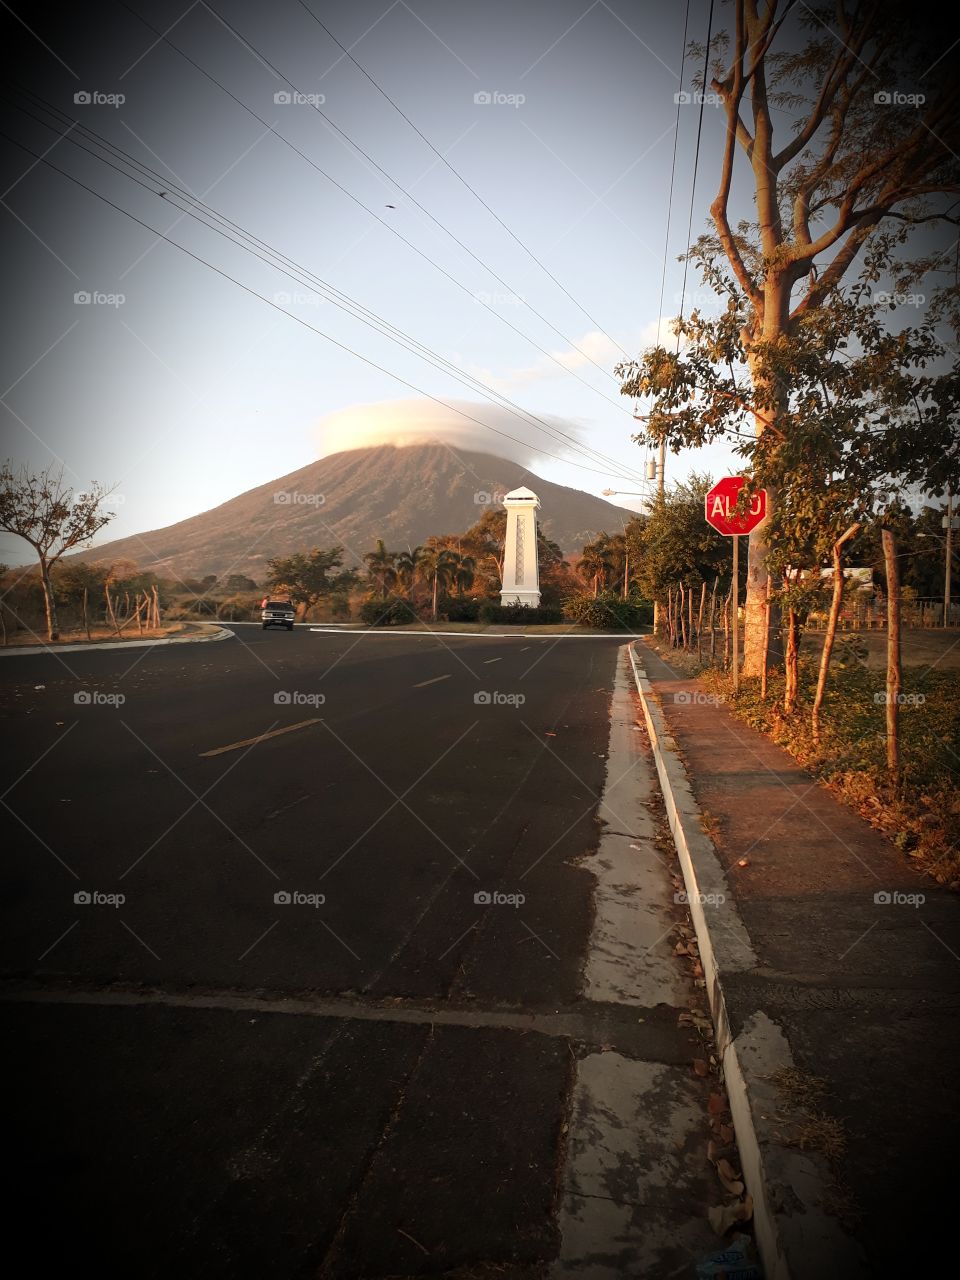 Volcan Chaparrastique, San Miguel, El Salvador.